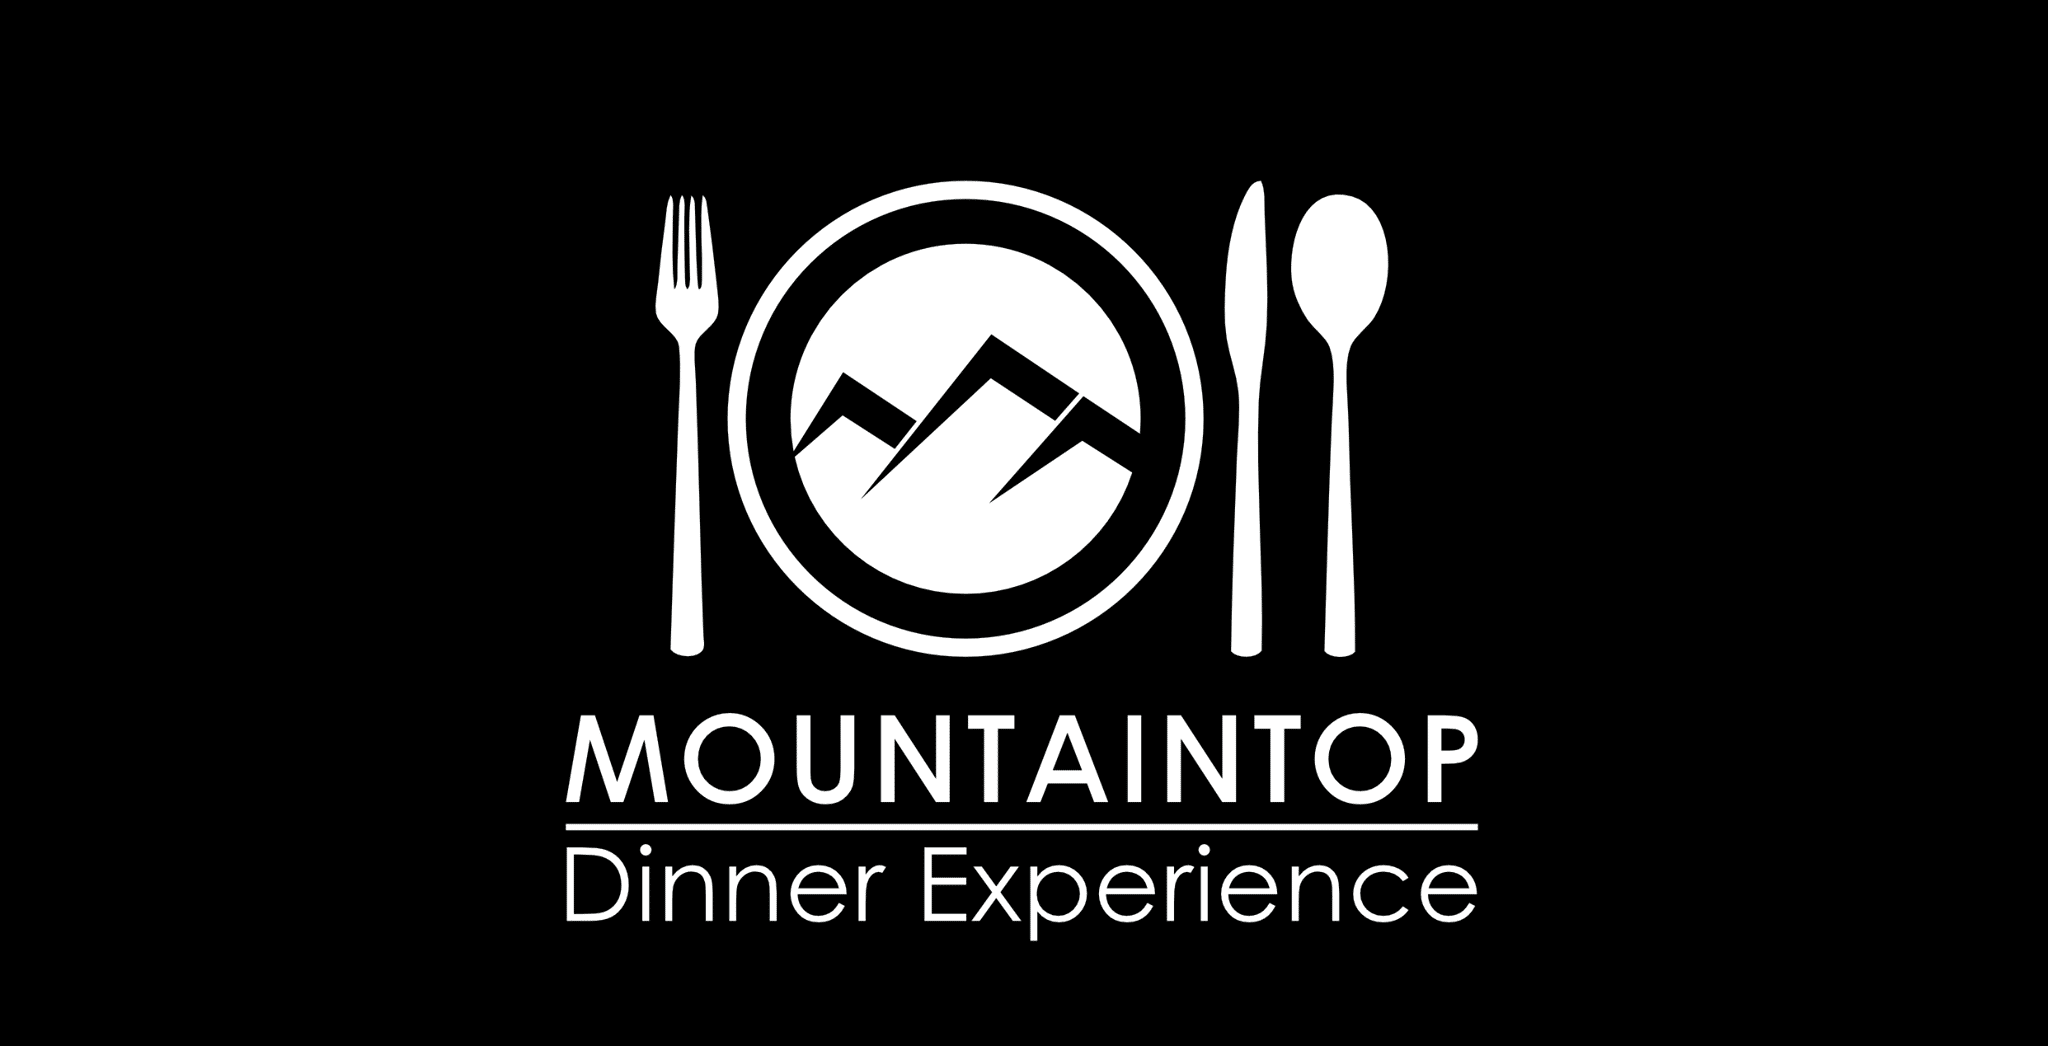 Mountaintop Dinner